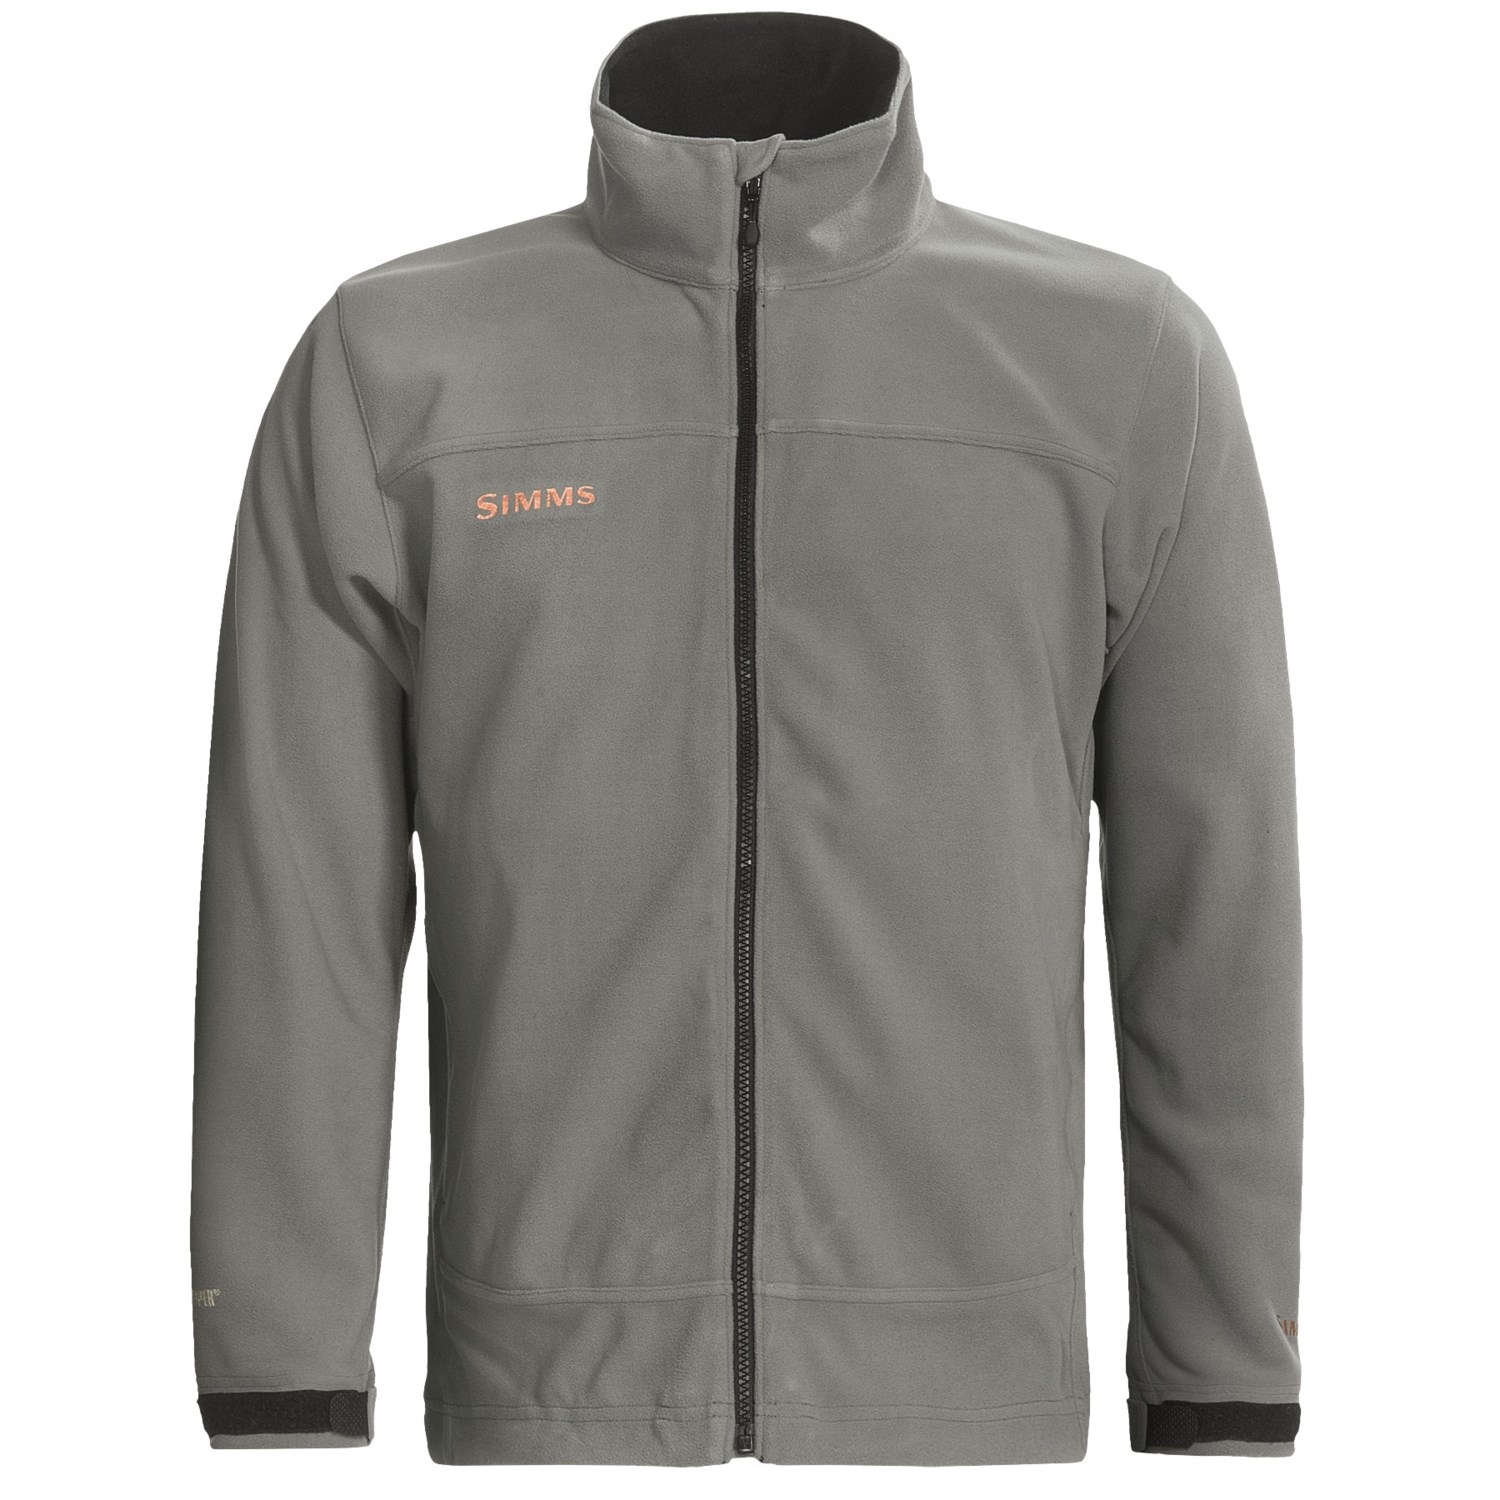 Simms Skiff Windstopper® Jacket (For Men) - Save 30%